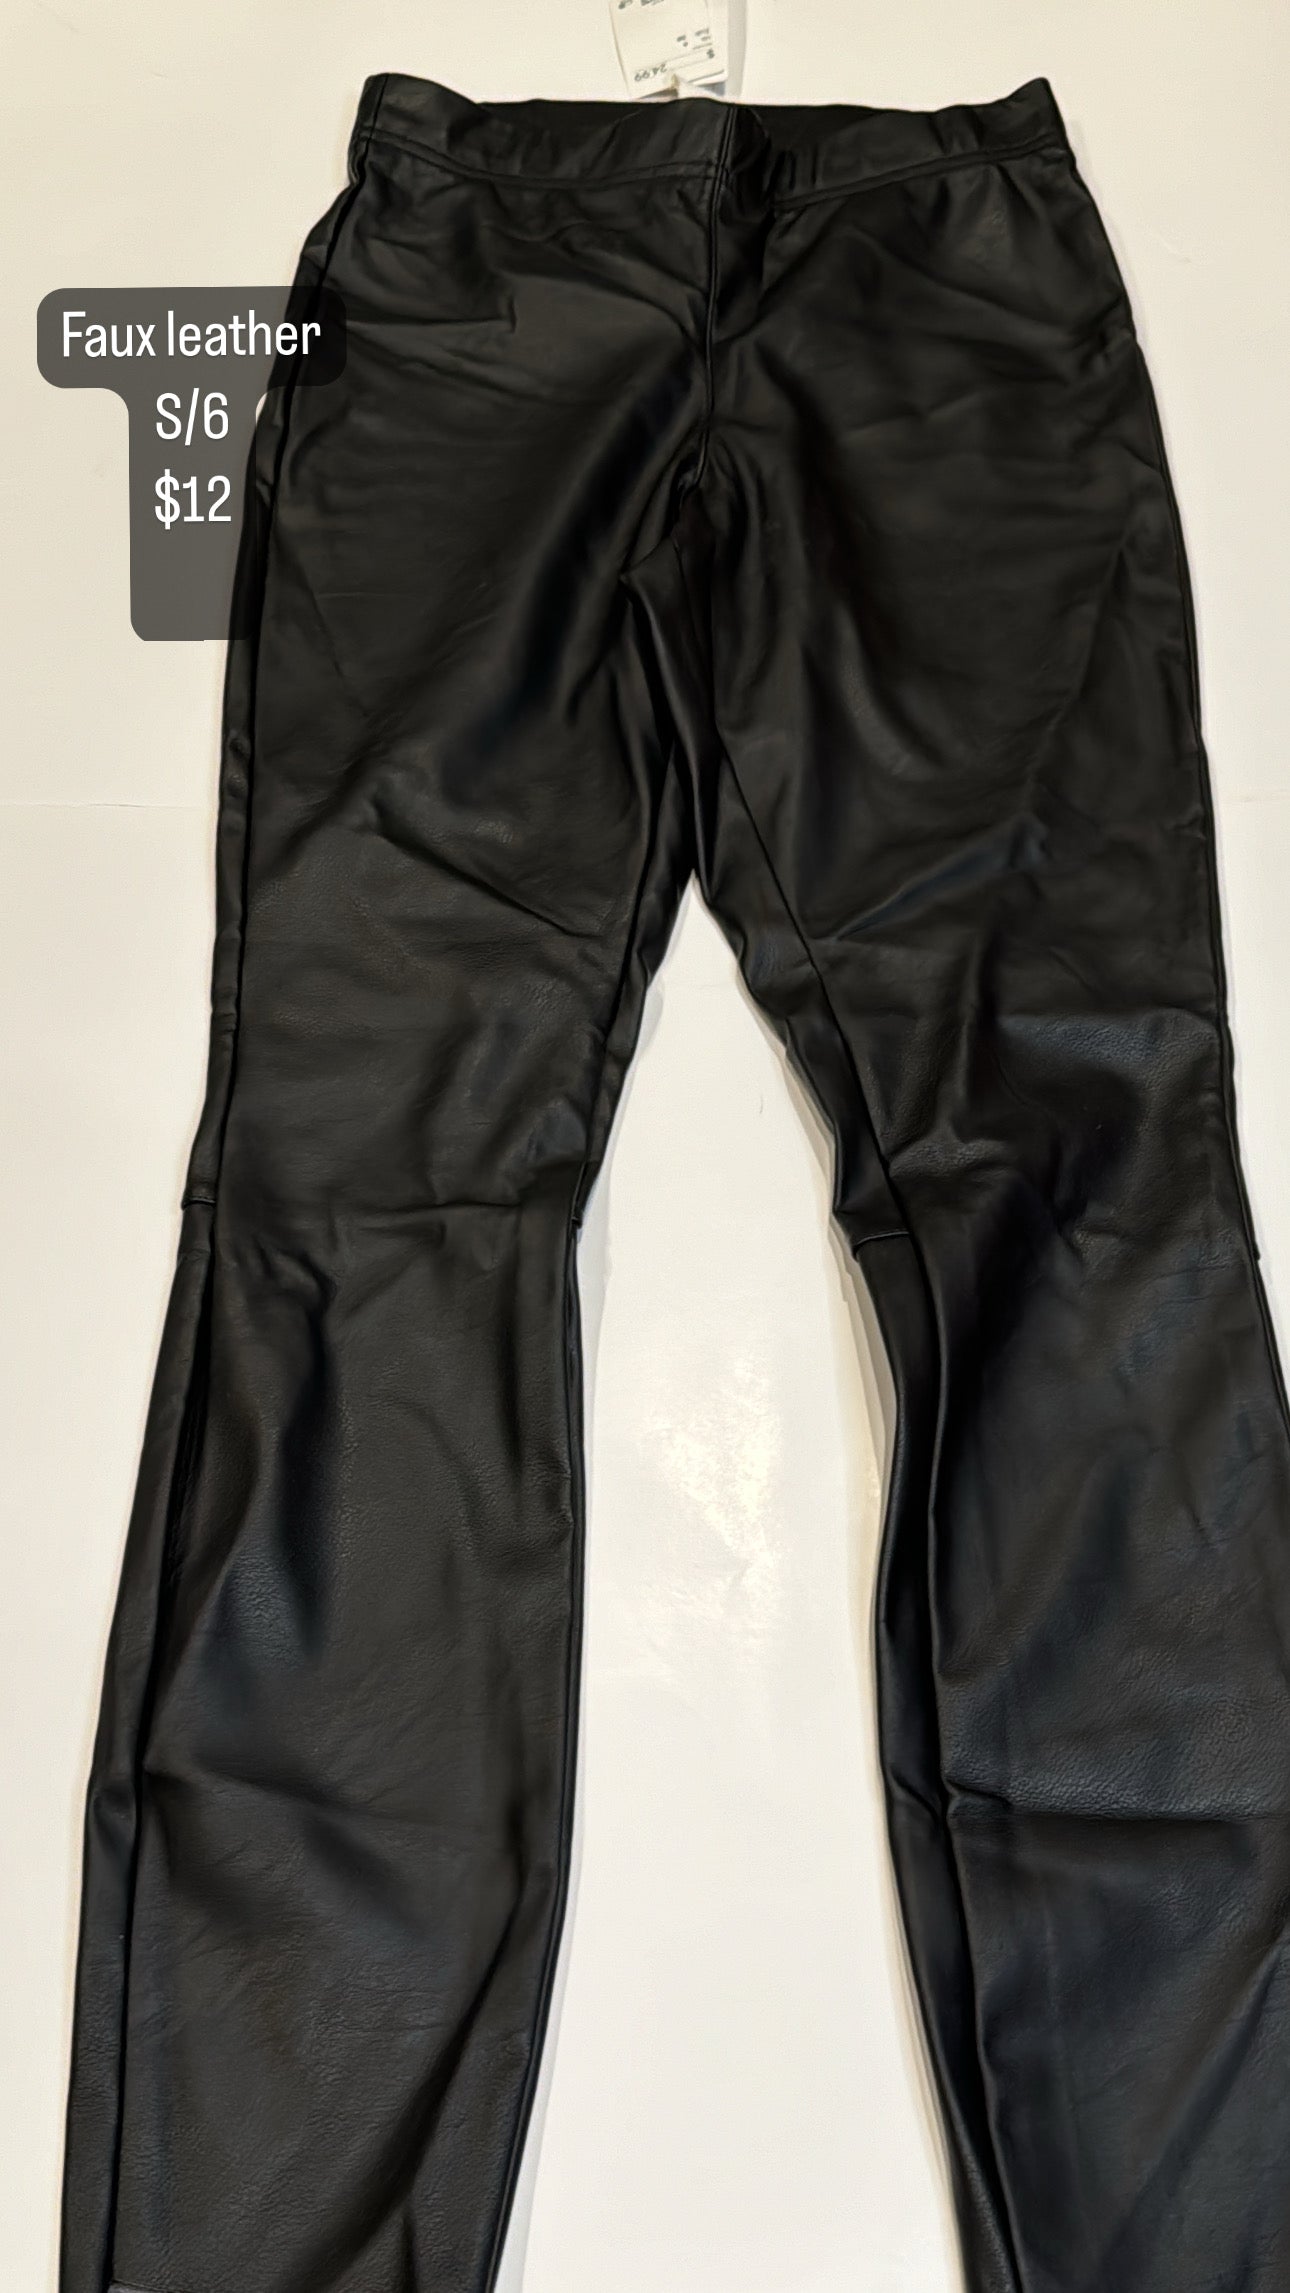 H&M S/6 Faux Leather Pants